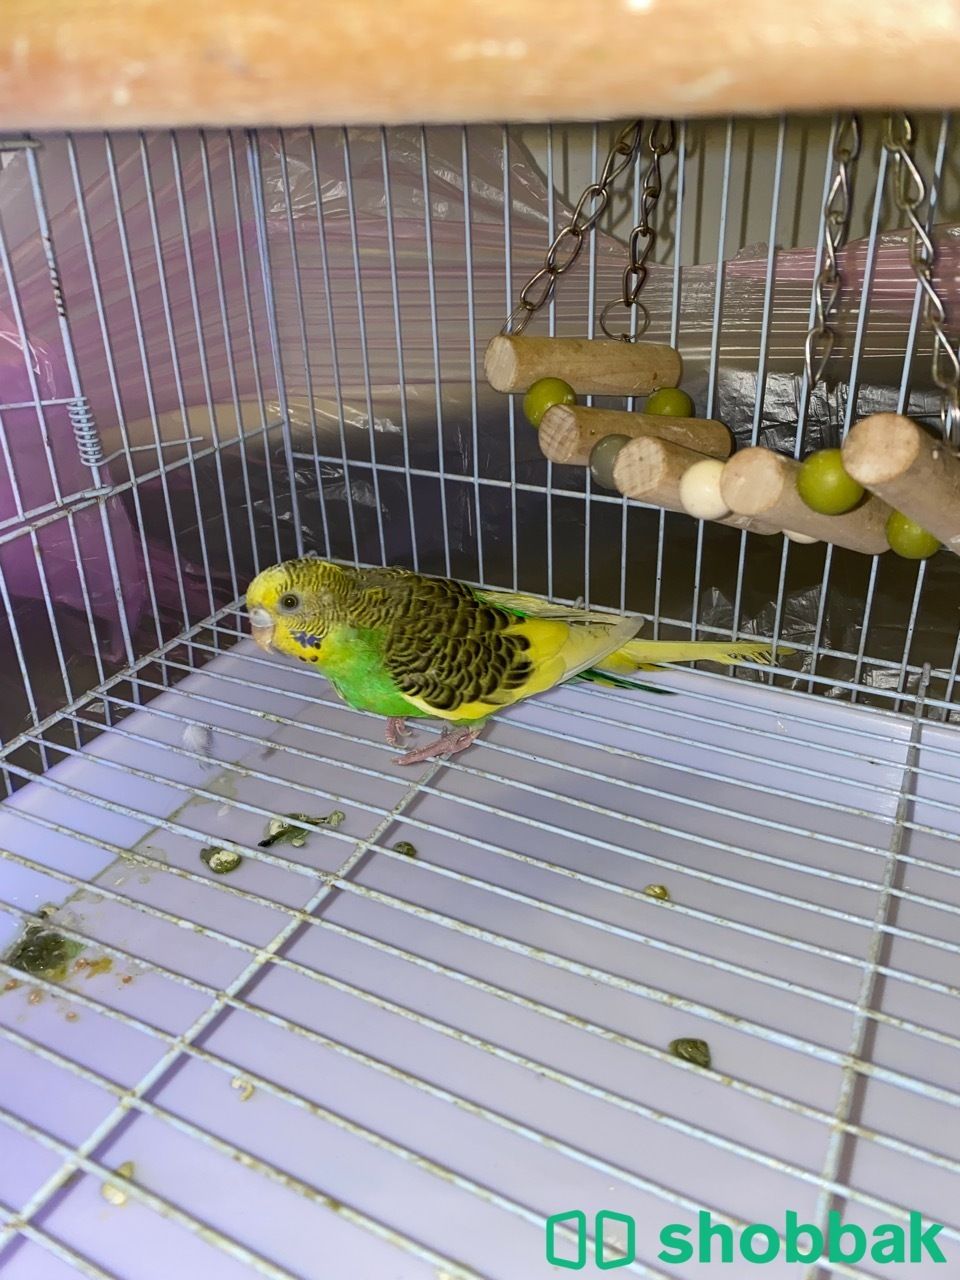 طائر البادجي (طائر الحب) للبيع Shobbak Saudi Arabia